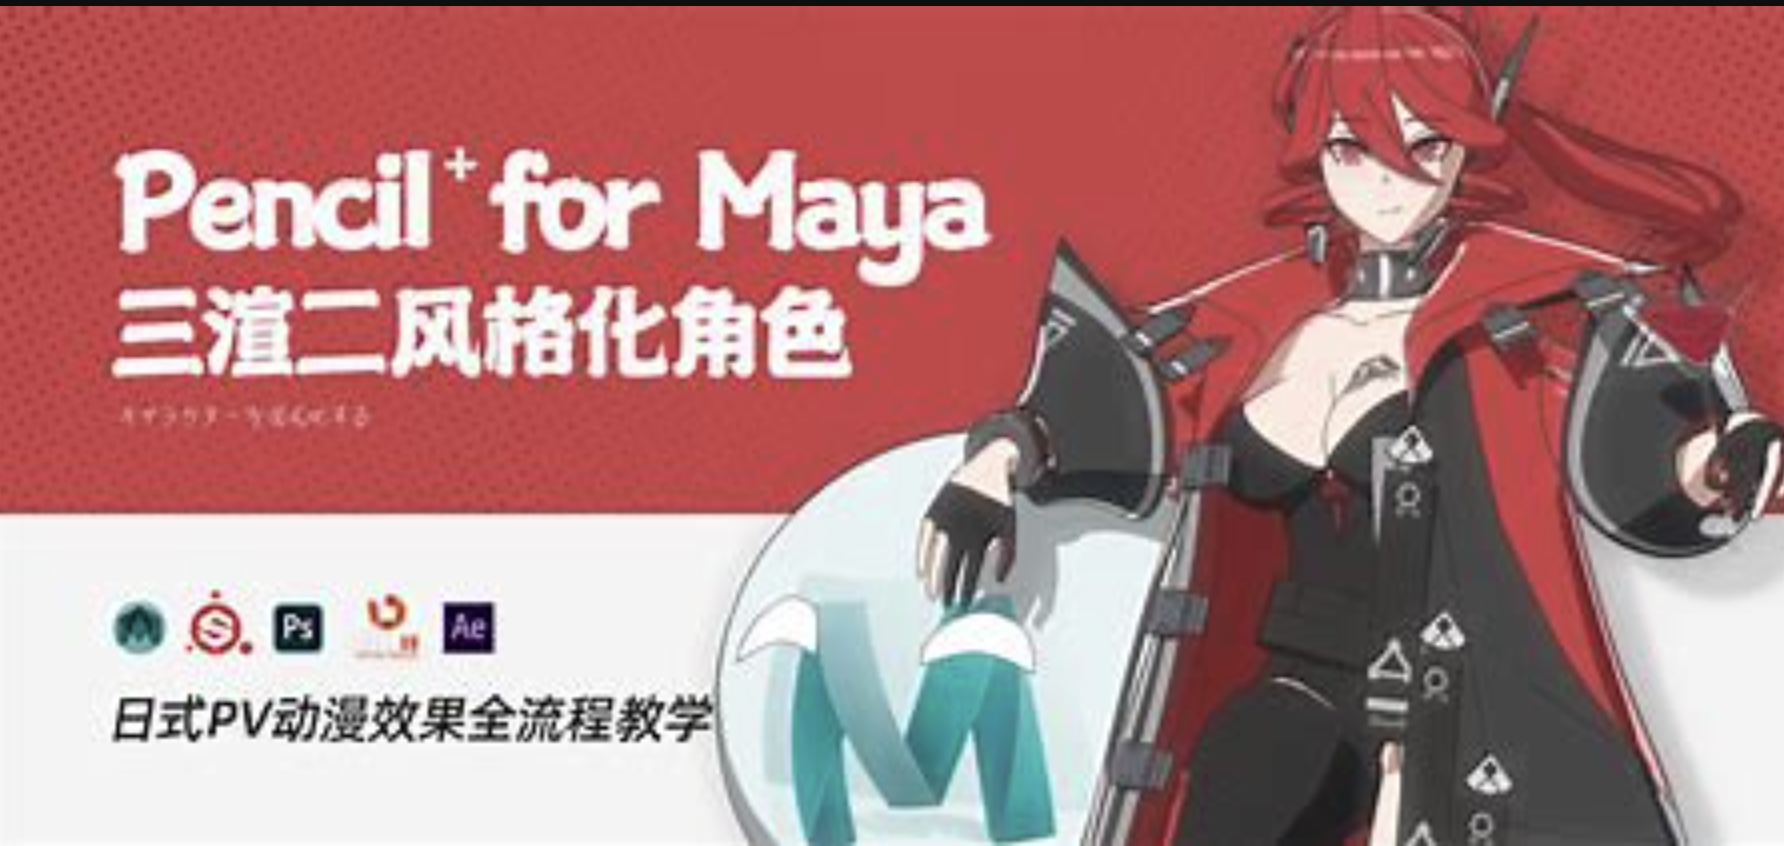 翼狐网 Pencil+4 for Maya 三渲二风格化角色全流程教学